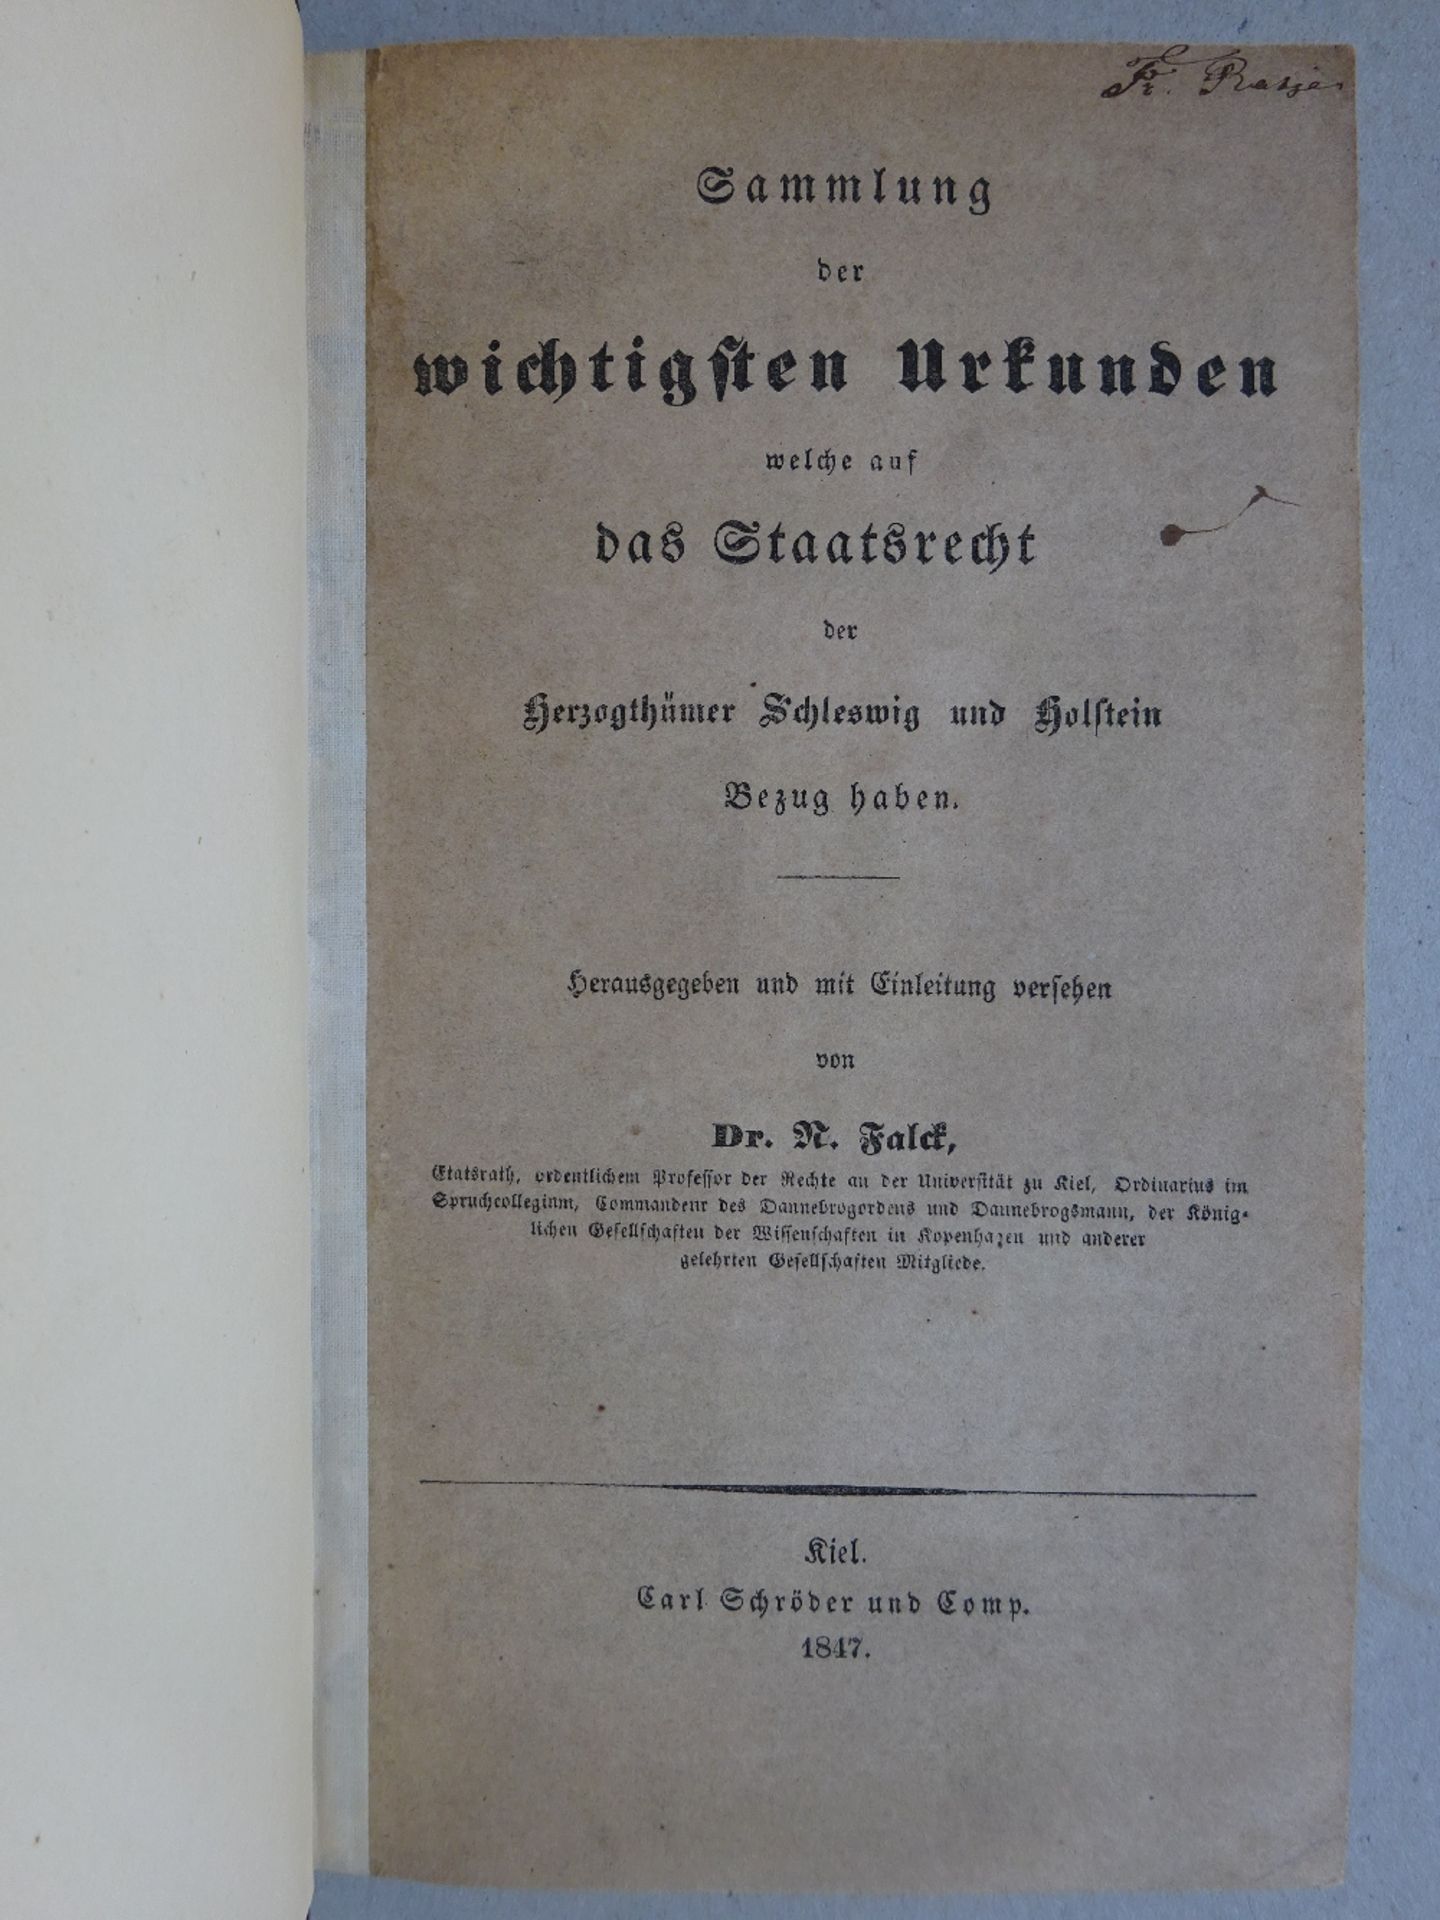 Falck - Urkunden Staatsrecht - Image 2 of 4